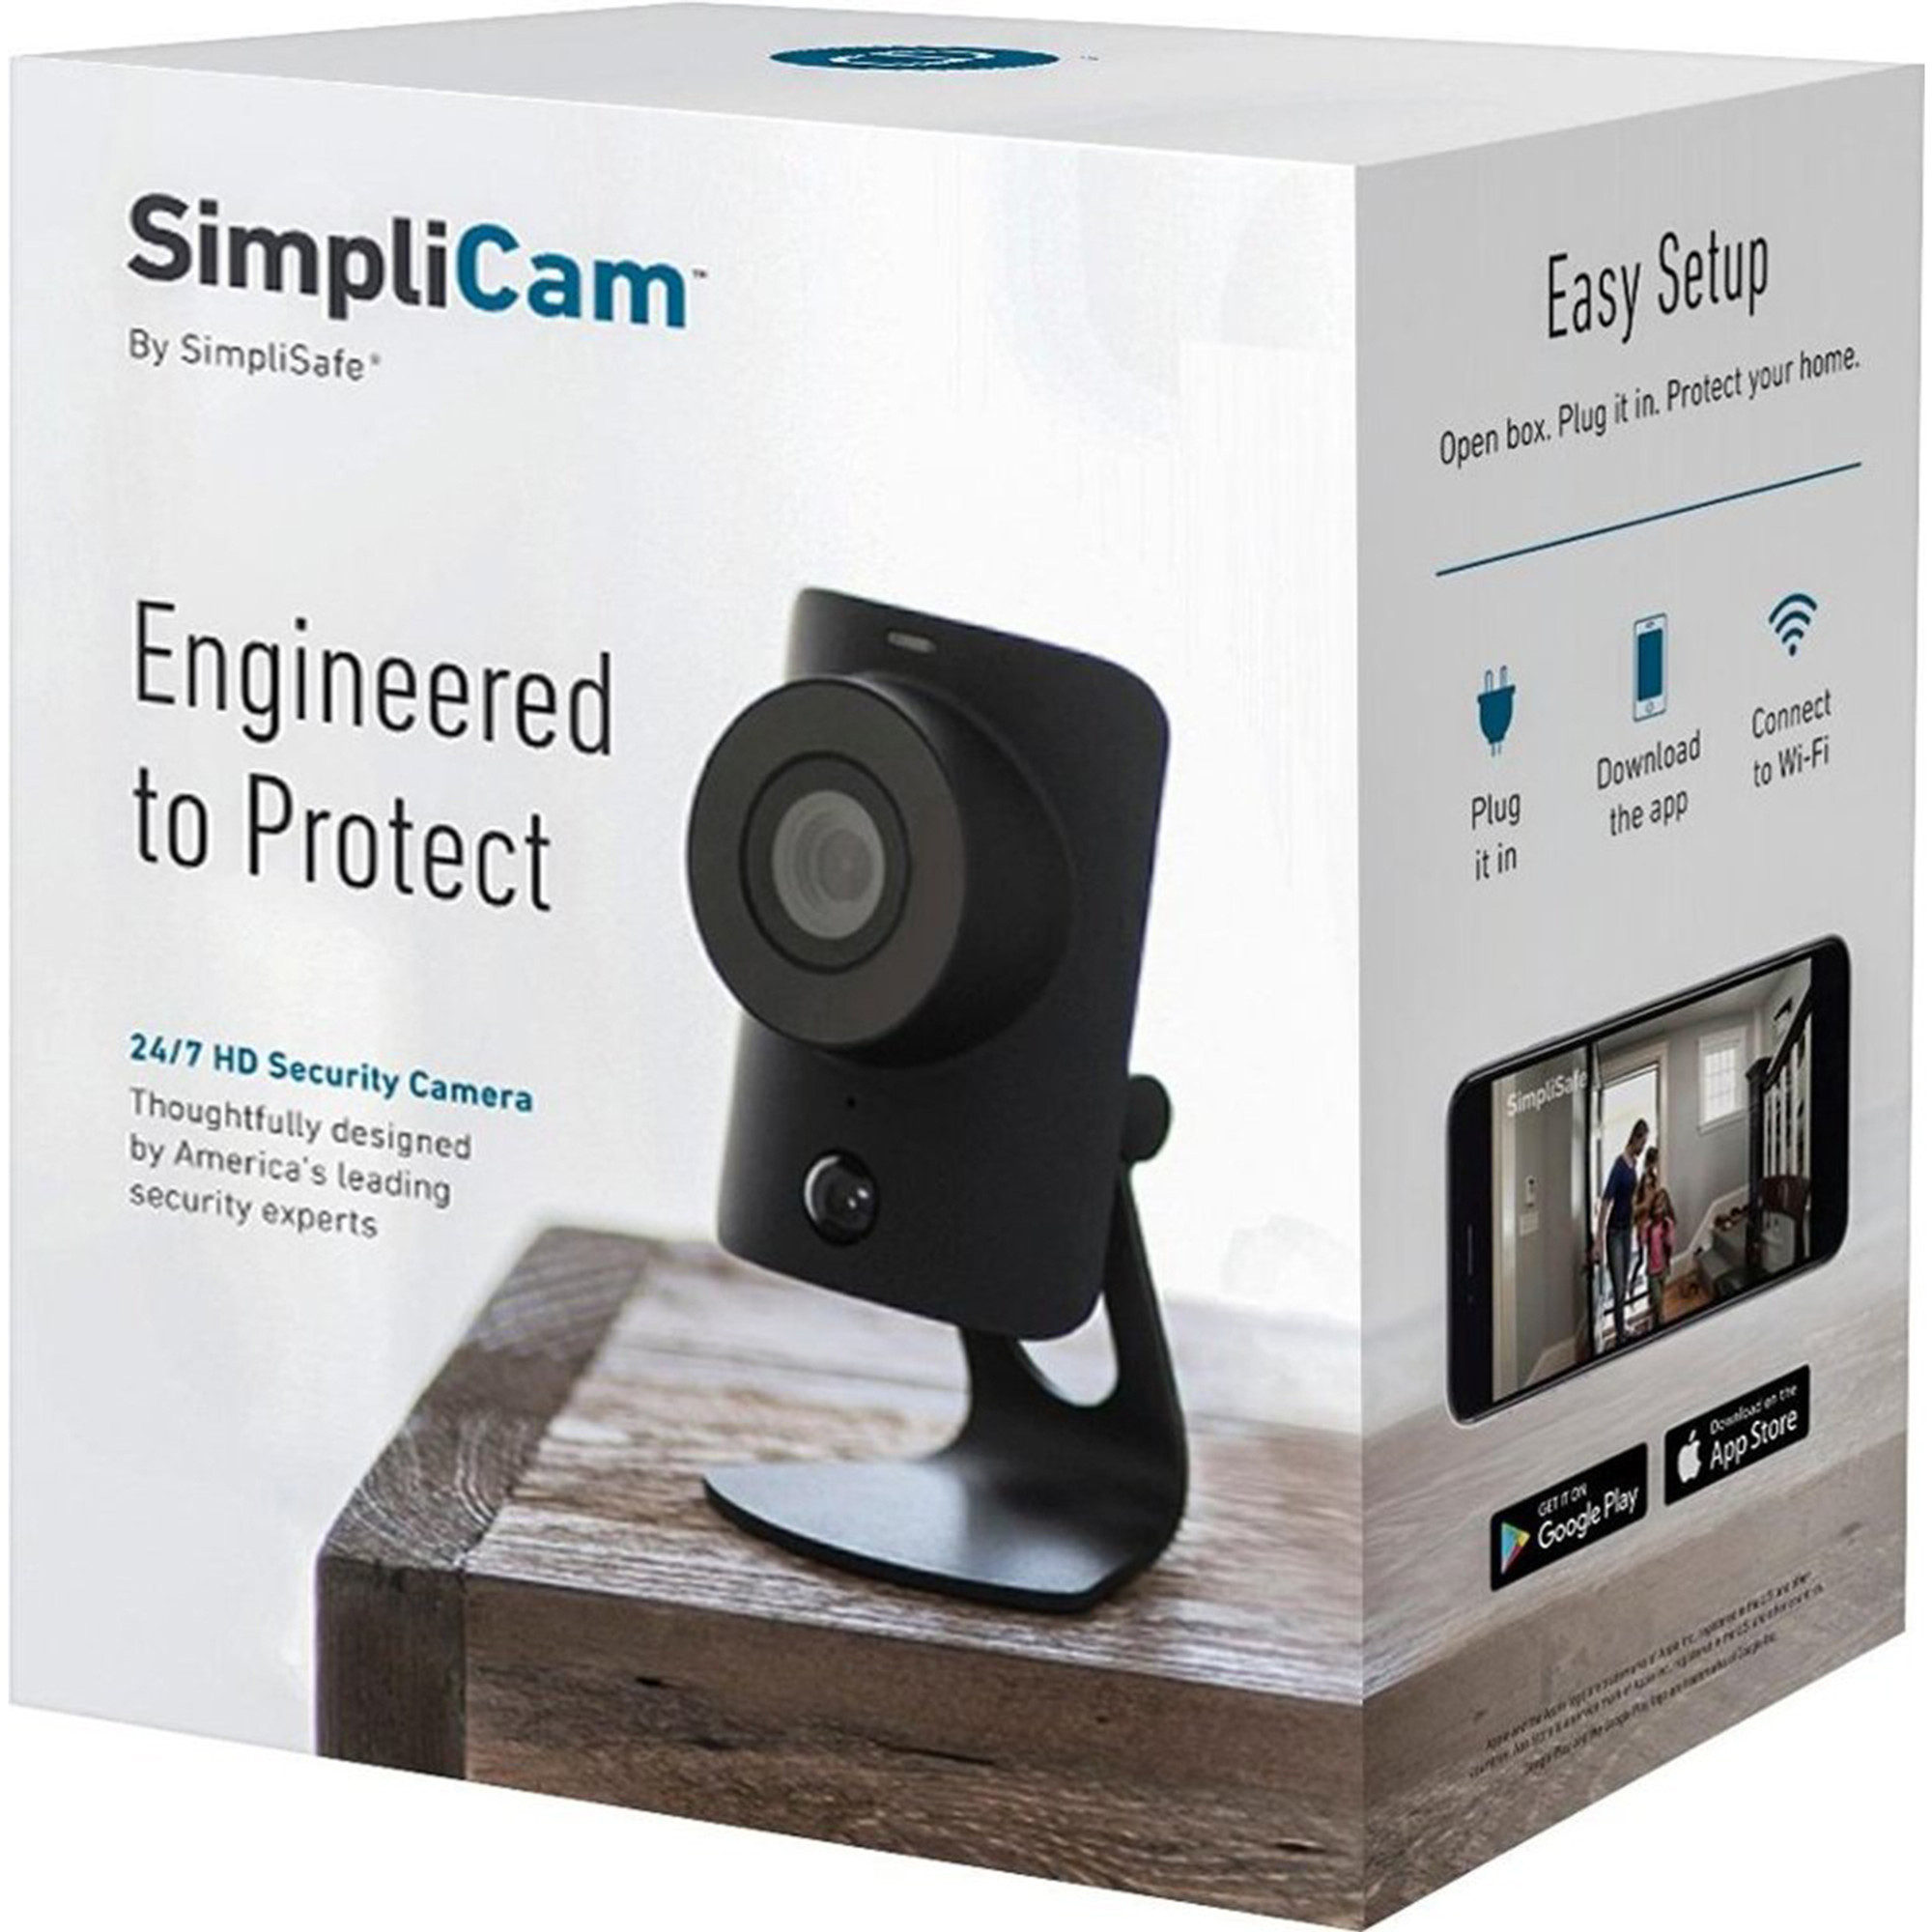 simply safe cameras